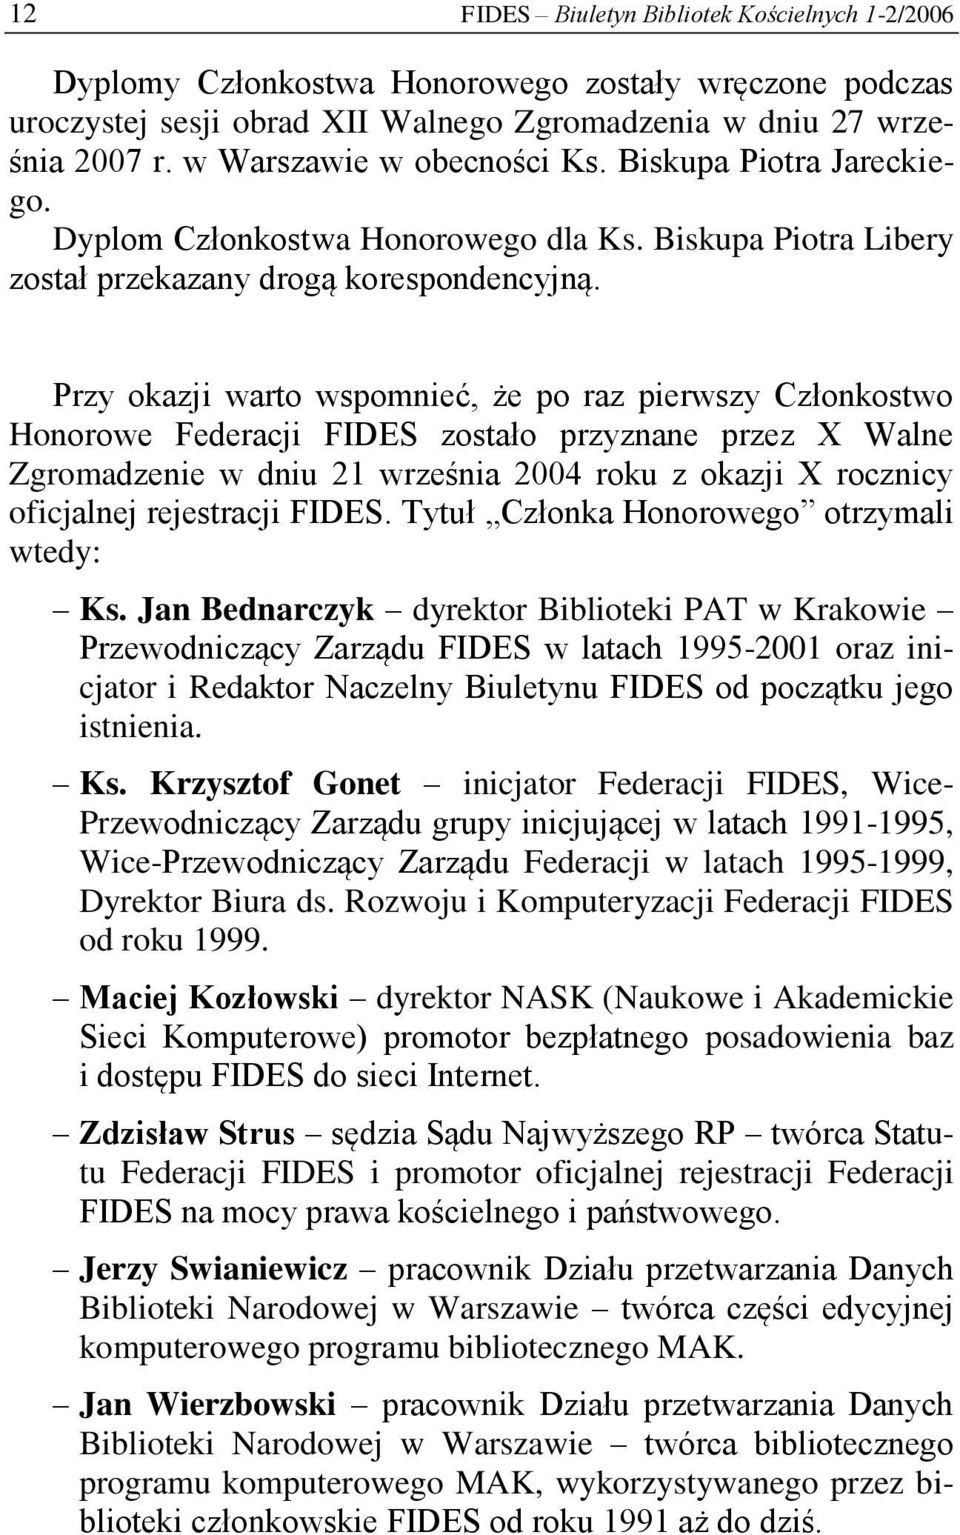 Przy okazji warto wspomnieć, że po raz pierwszy Członkostwo Honorowe Federacji FIDES zostało przyznane przez X Walne Zgromadzenie w dniu 21 września 2004 roku z okazji X rocznicy oficjalnej